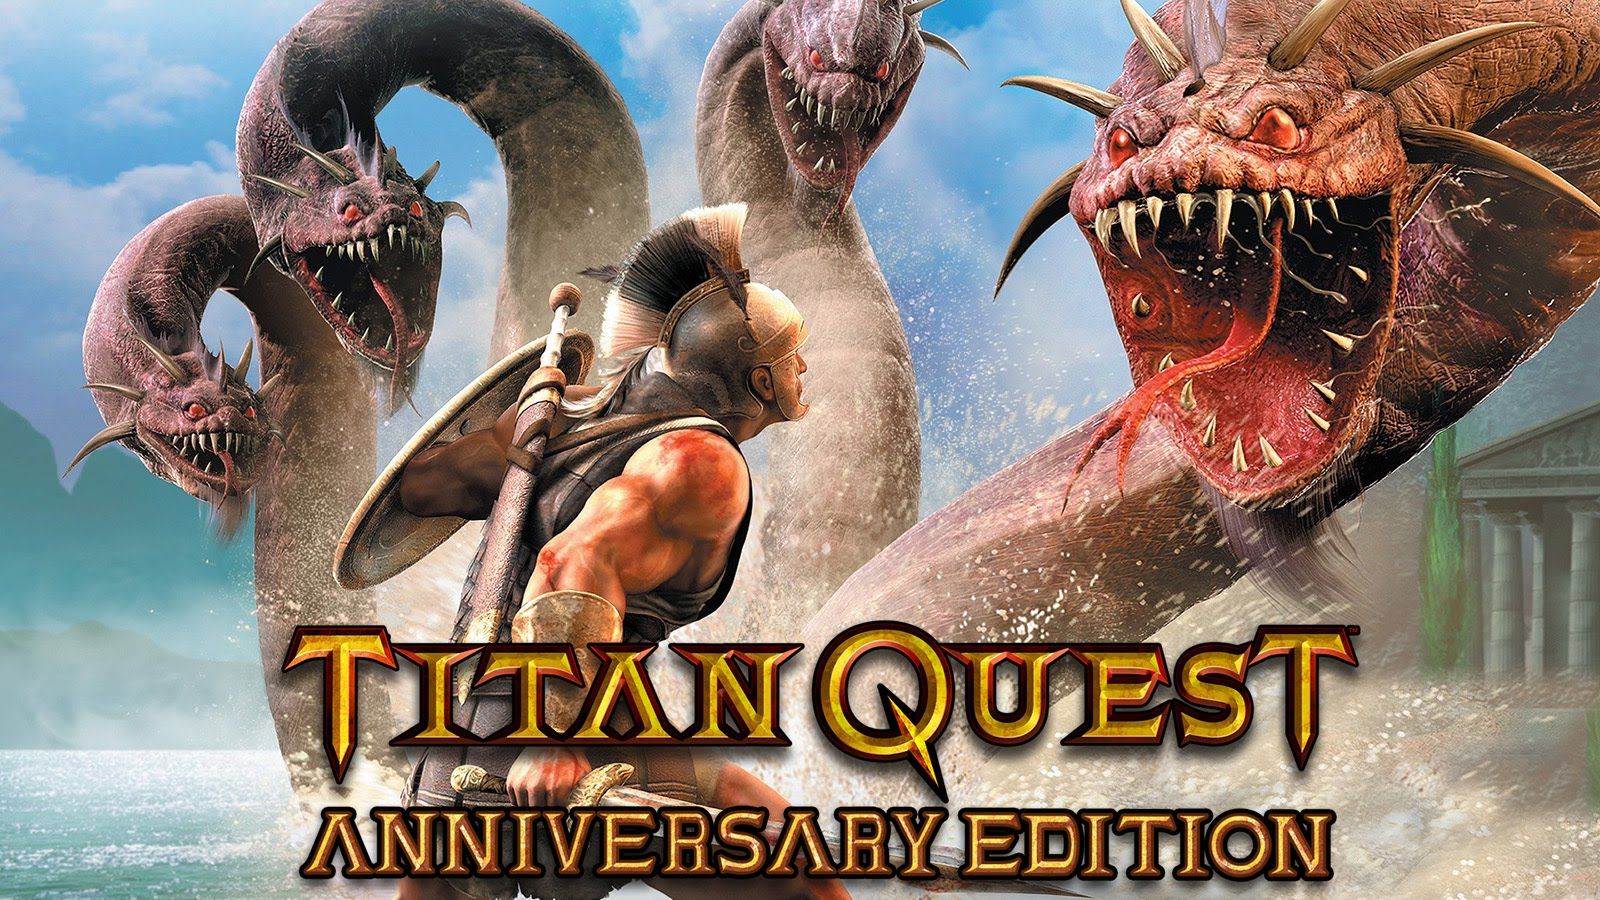 Titan Quest Anniversary Edition : Buy Titan Quest Anniversary Edition ...